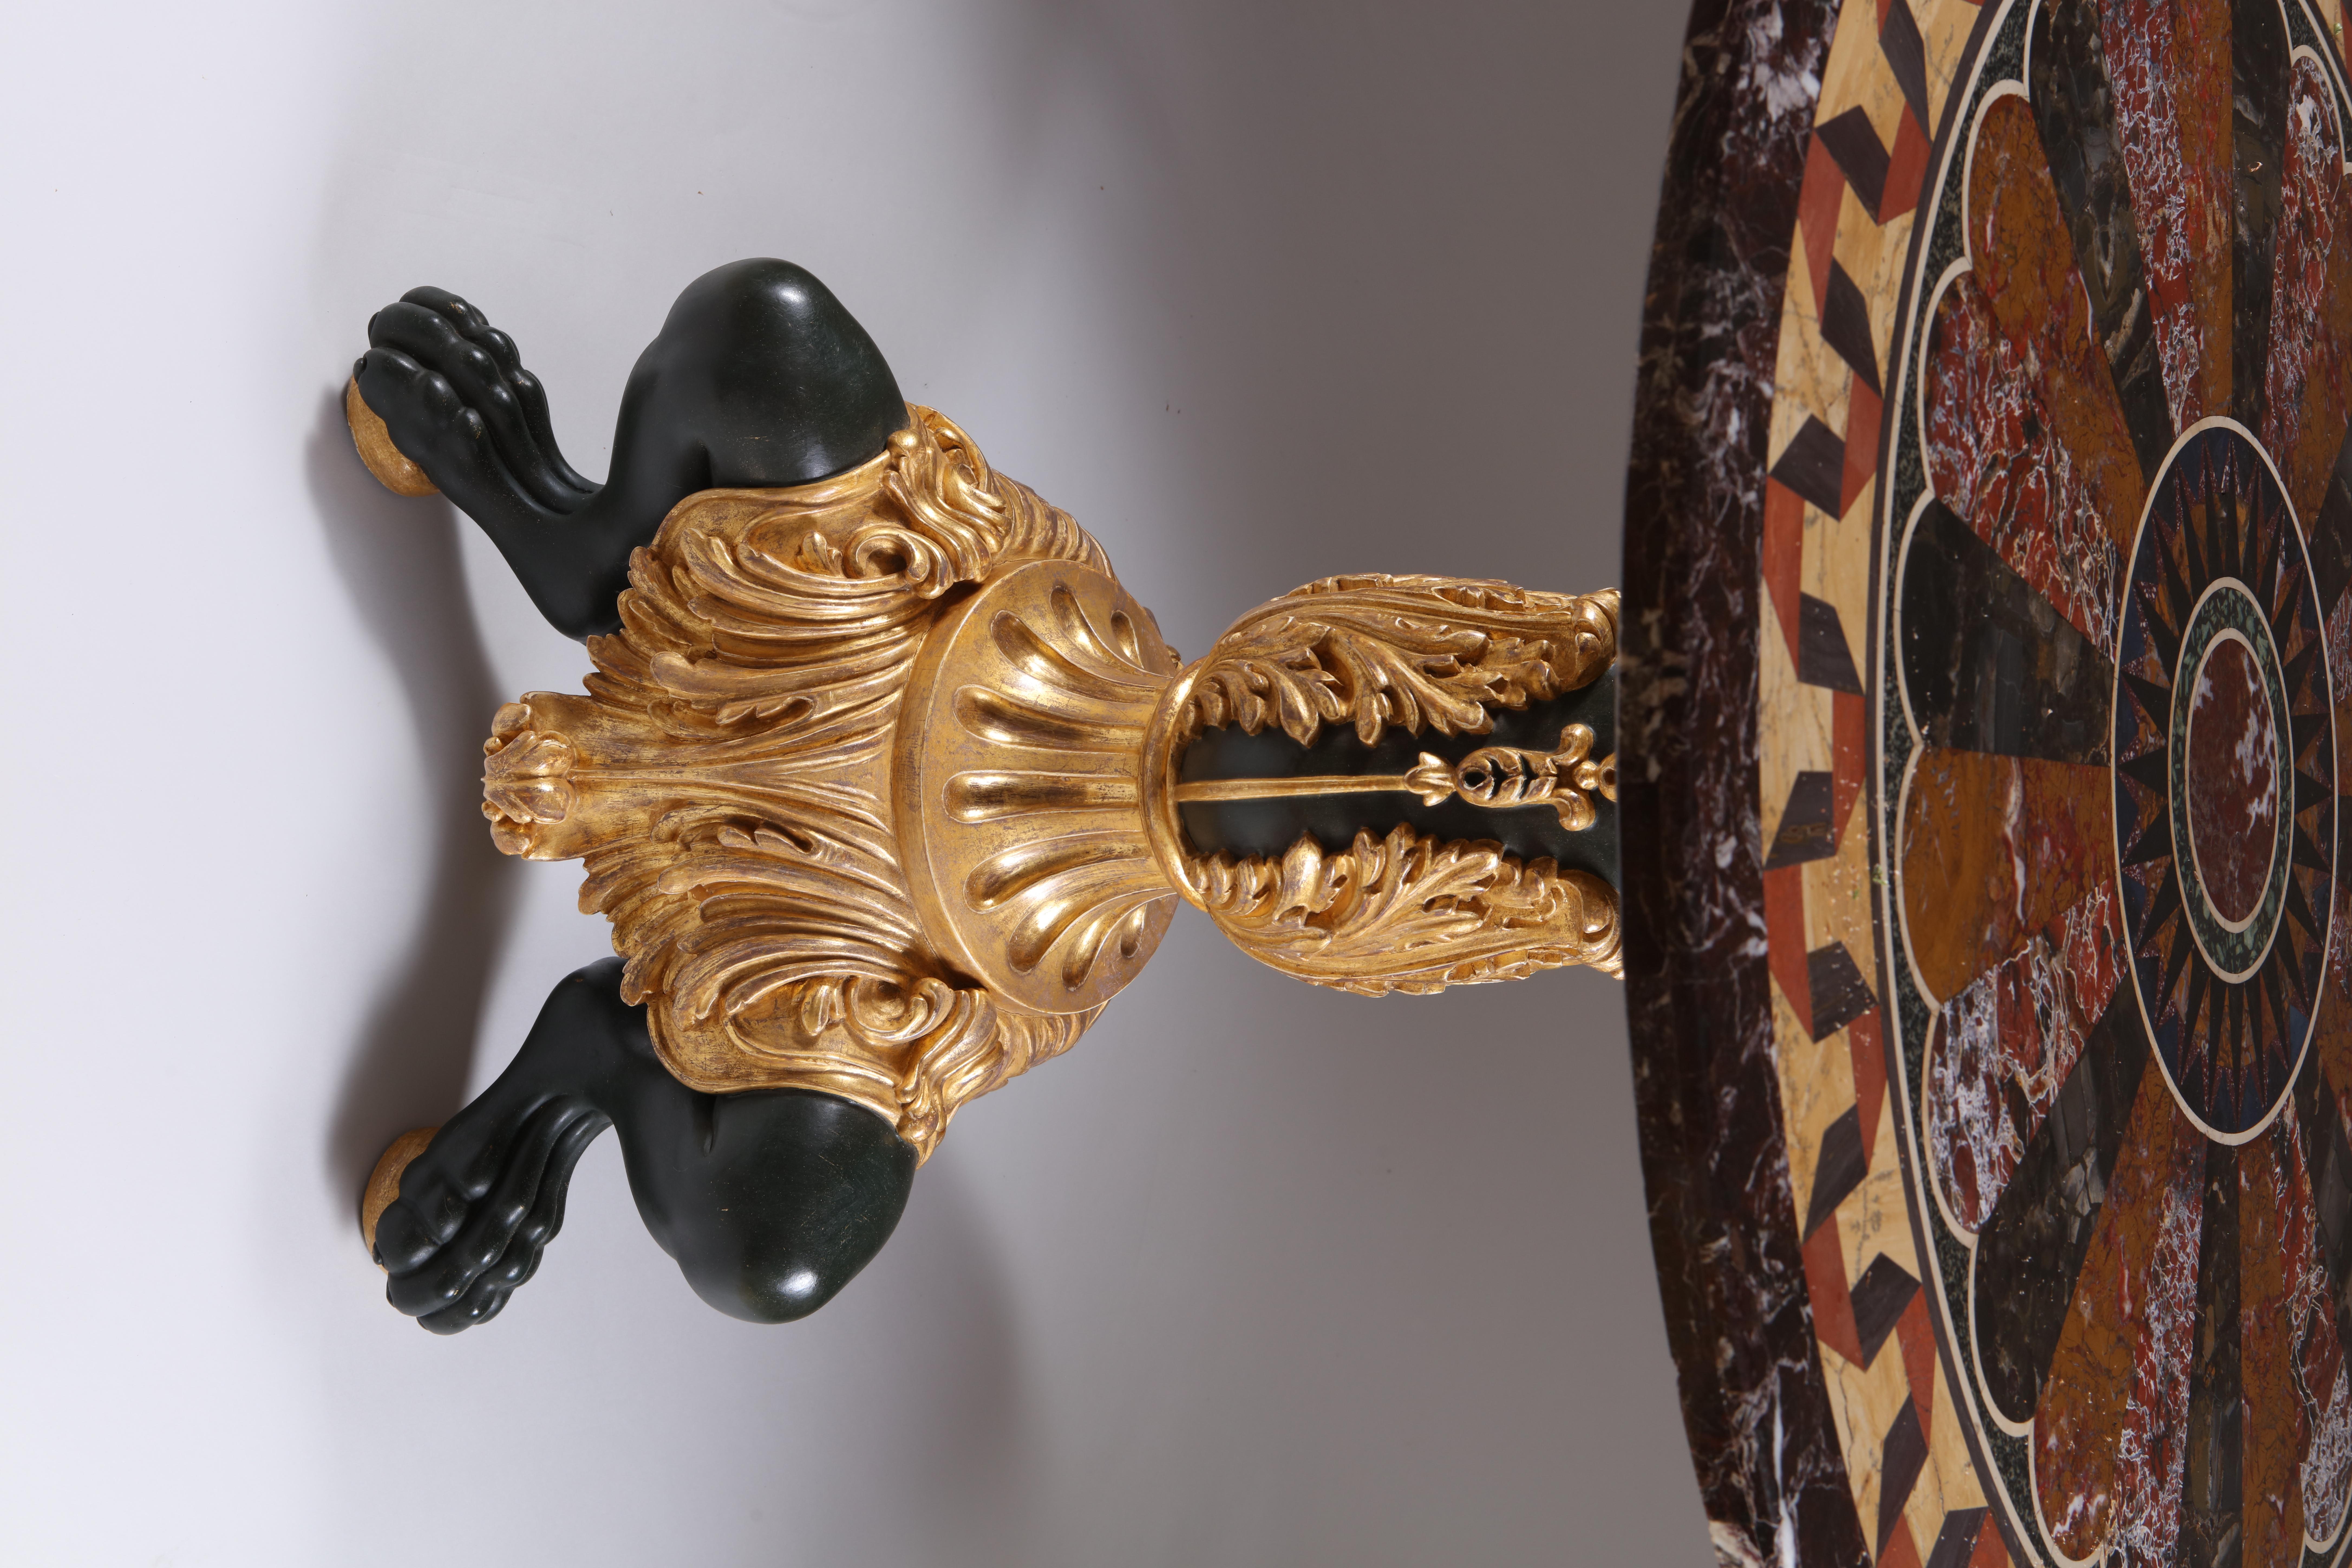 Dieser prächtige Mustertisch enthält einige unglaubliche Exemplare, die die reichsten, tiefsten und lebendigsten Farben der begehrtesten Marmorarten hervorheben. Dieser italienische Grand-Tour-Mitteltisch gehört zu den schönsten seiner Art.

Dieses